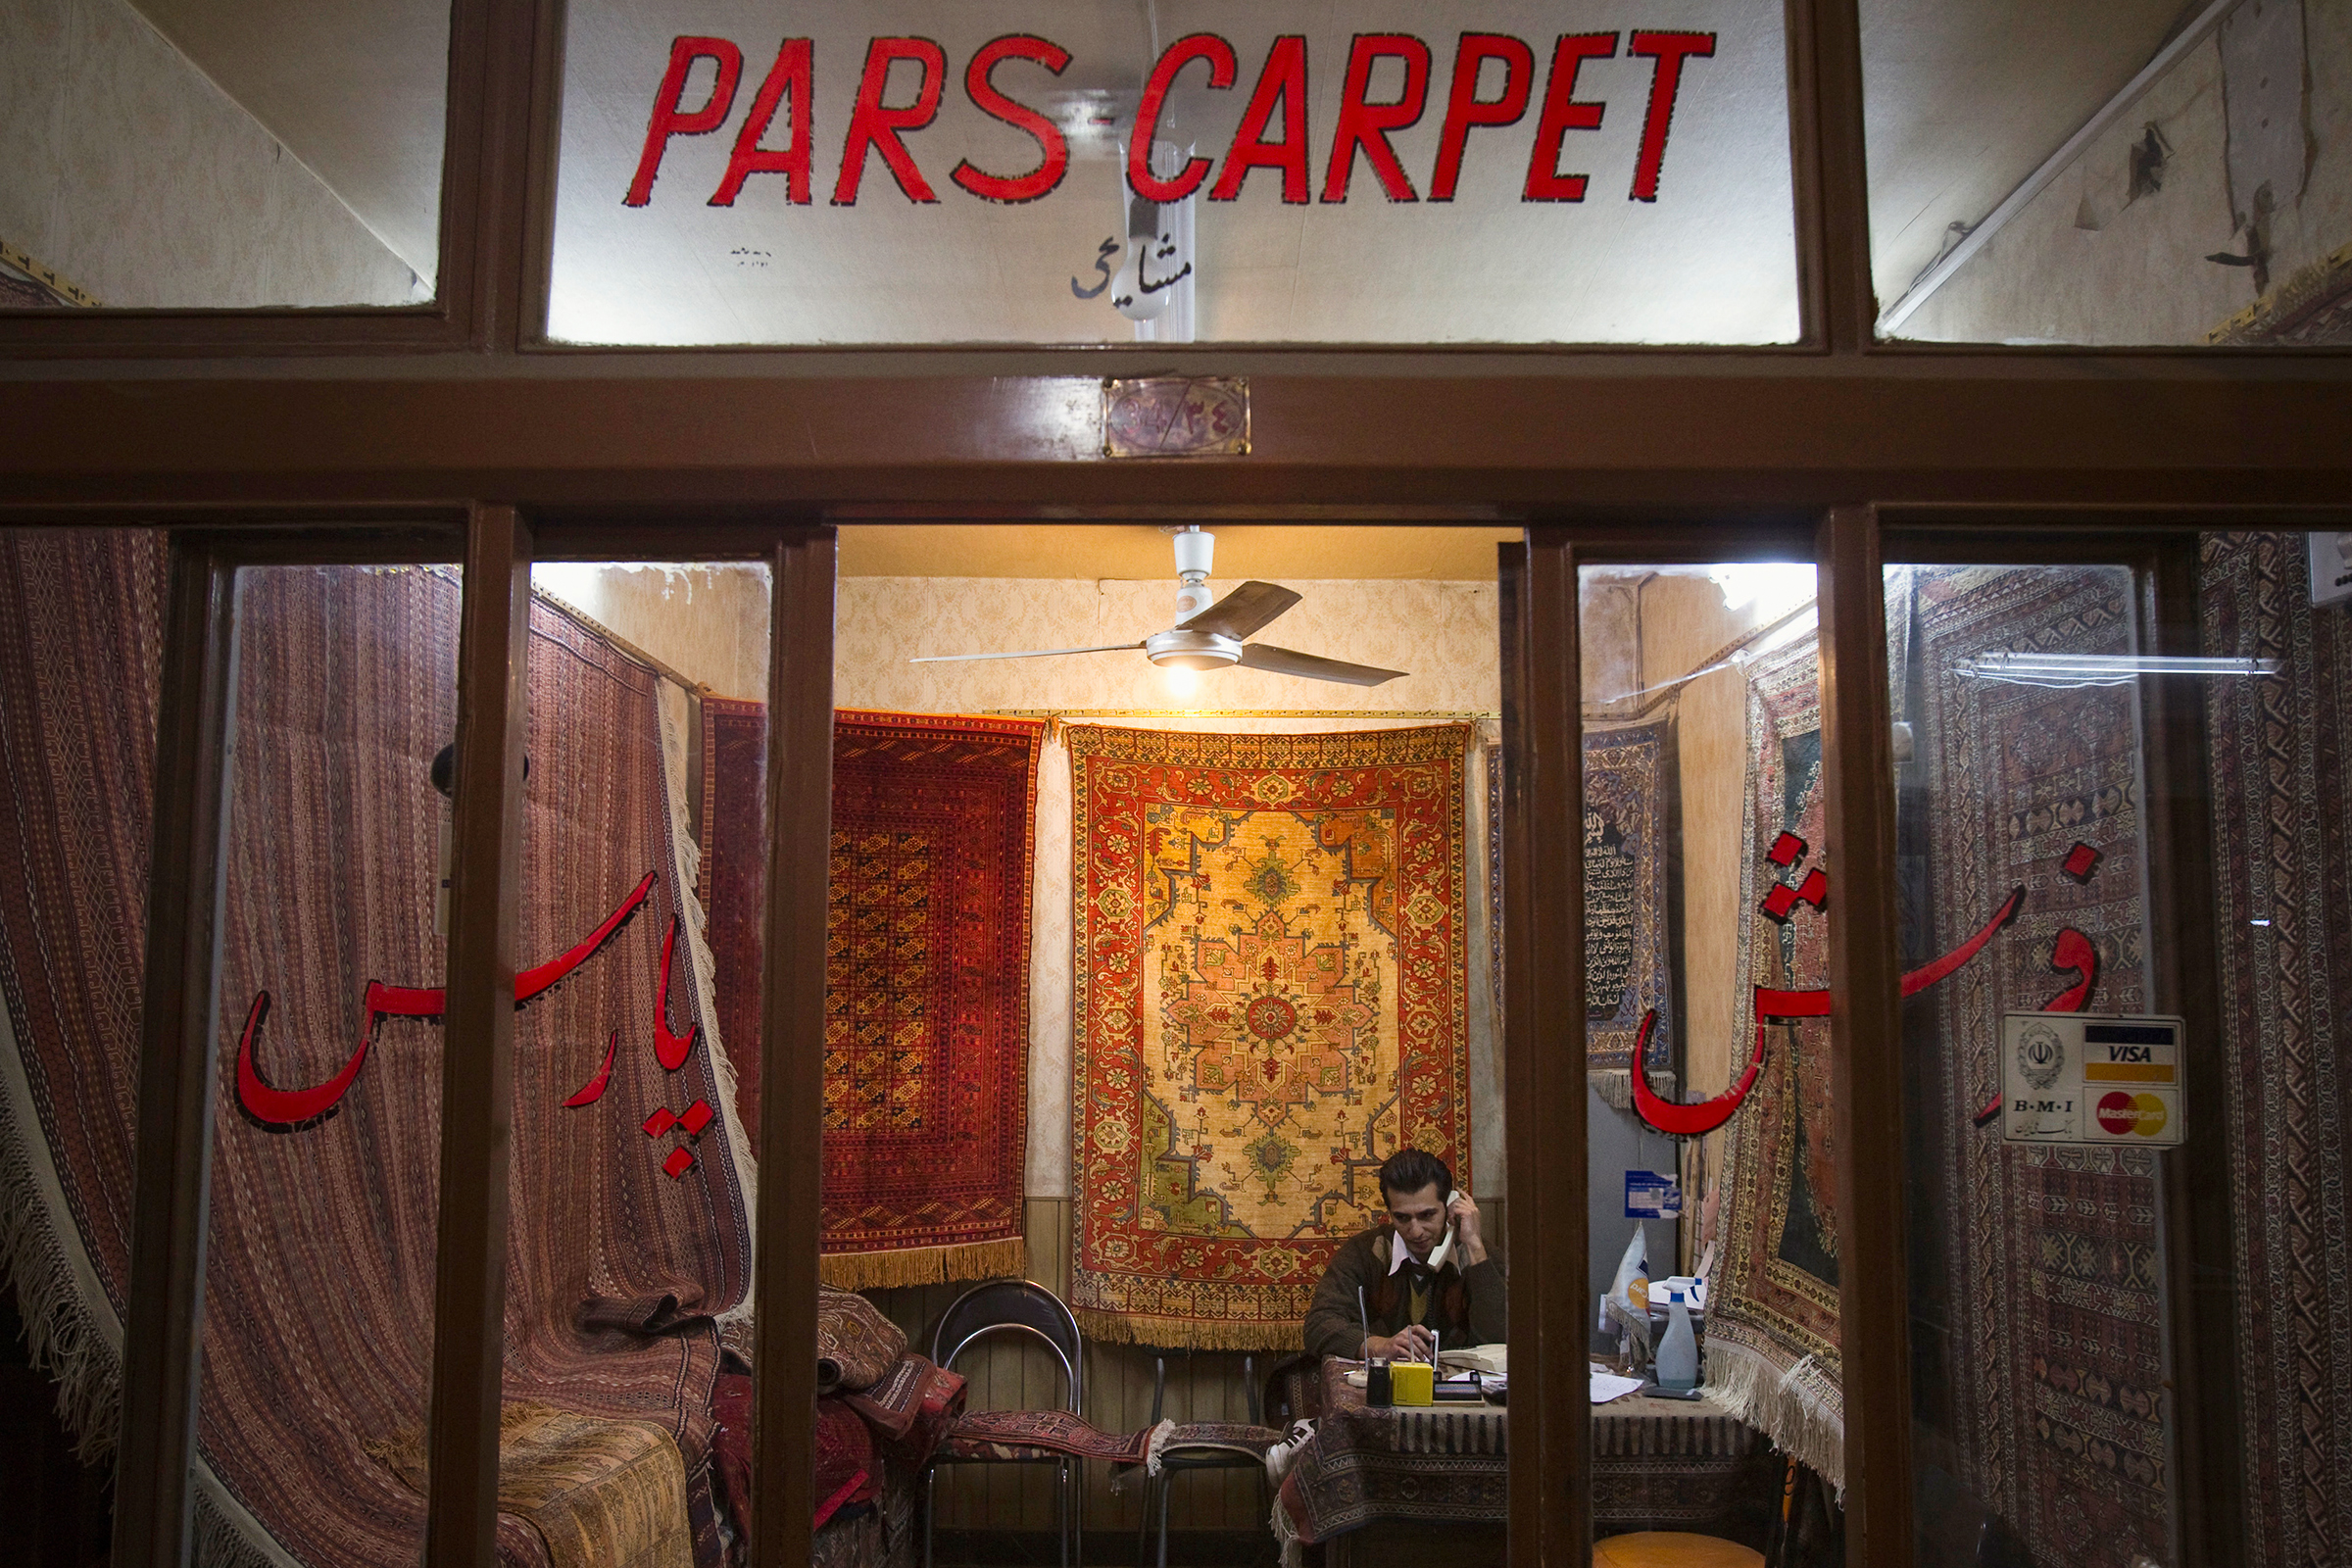 Купить ковер в Иране можно на любом базаре, однако зачастую под видом настоящих персидских туристам продают китайские изделия
